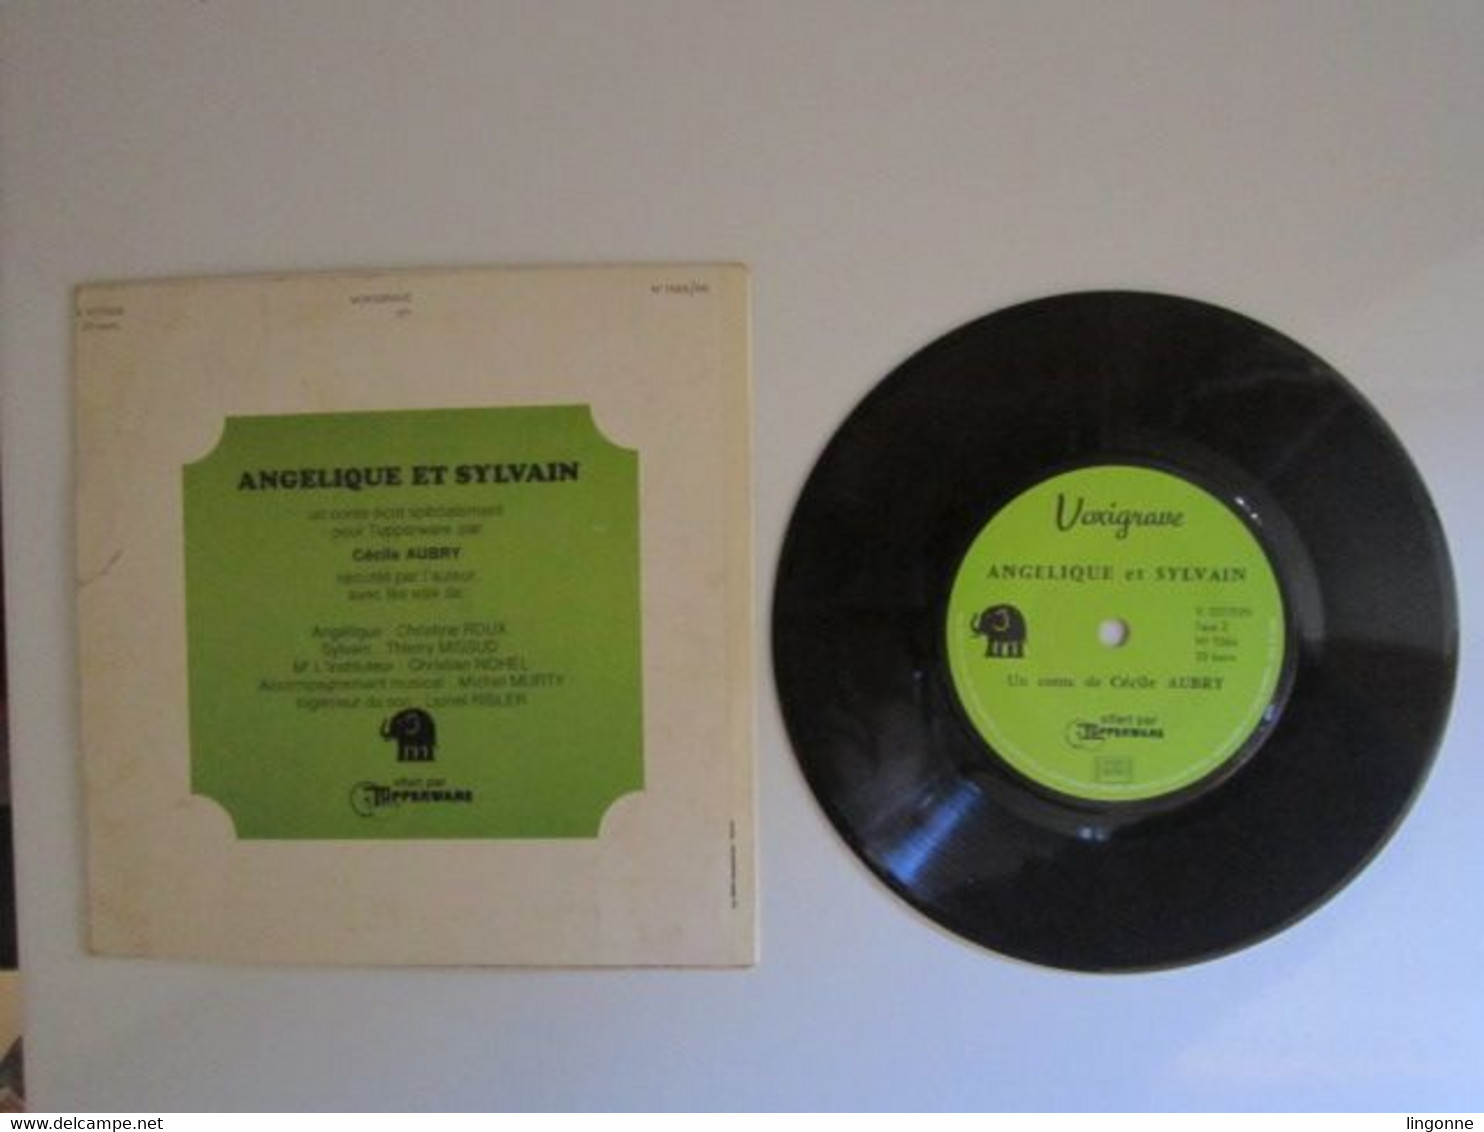 1971 Vinyle 45 Tours LIVRE DISQUE DE CECILE AUBRY " ANGELIQUE ET SYLVAIN " OFFERT PAR TUPPERWARE - Children